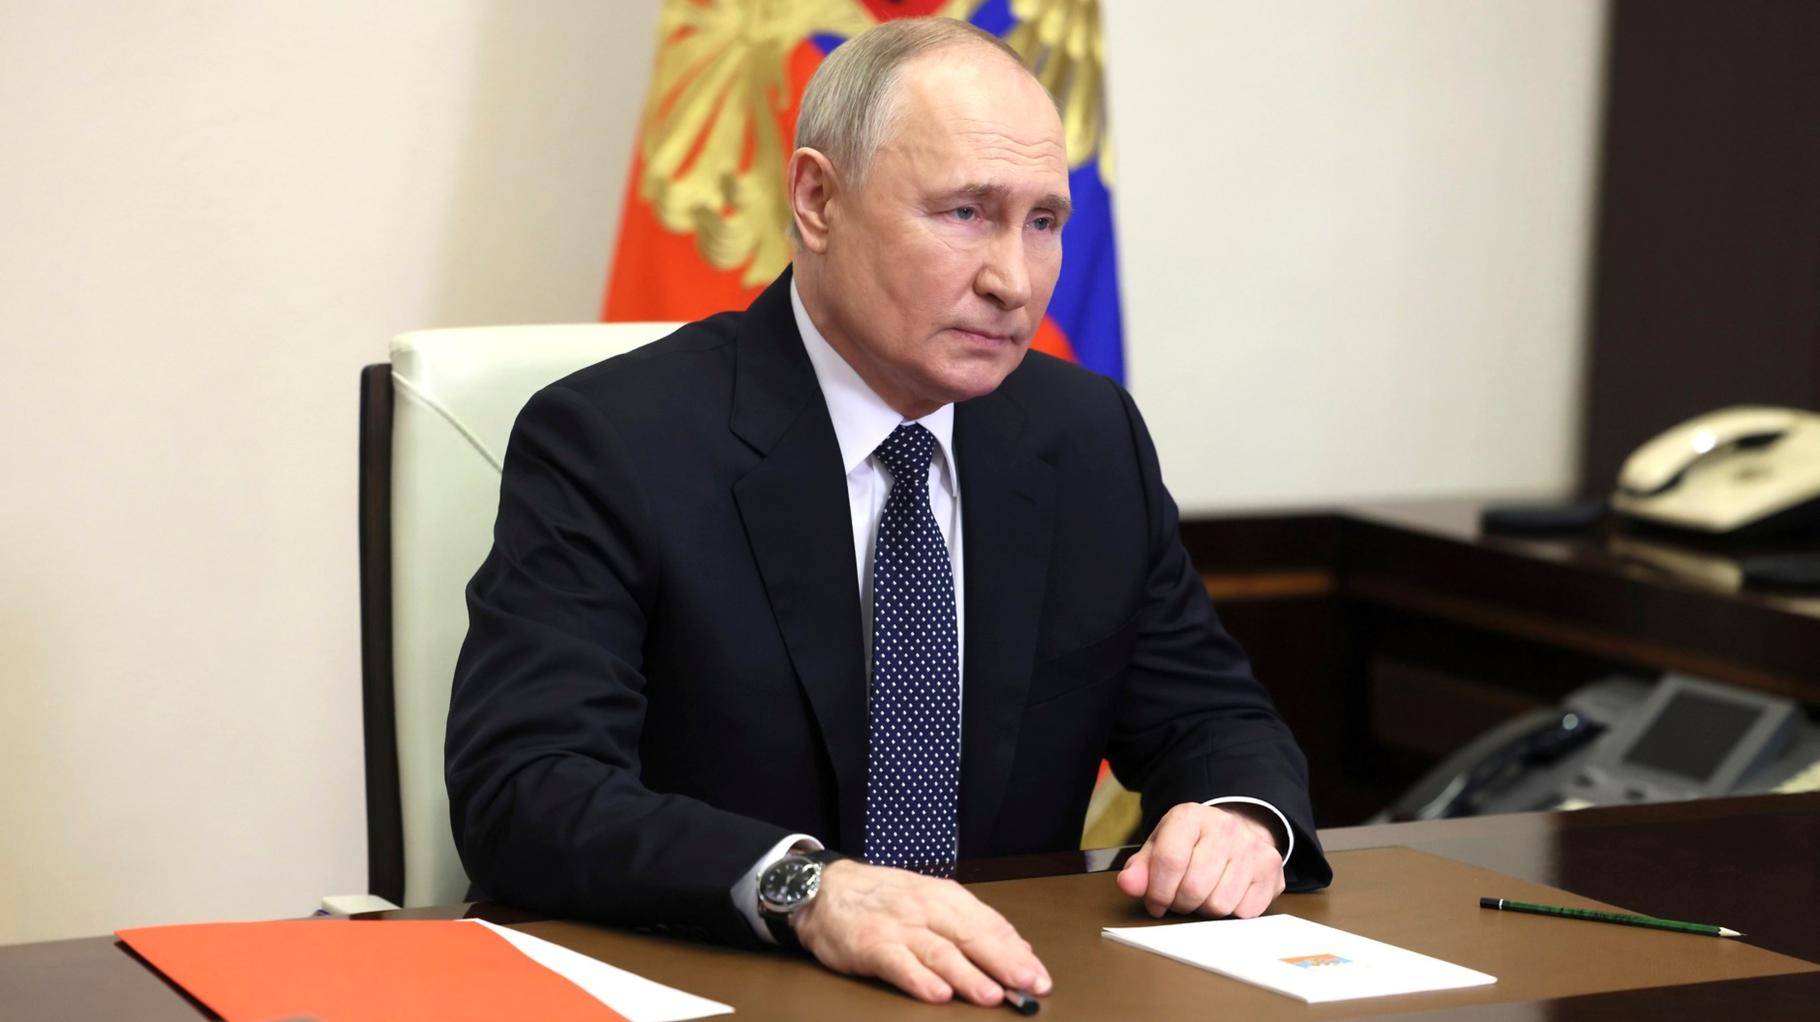 Staatsmedien ernennen Putin zum Wahlsieger – was das für Russlands Zukunft bedeutet